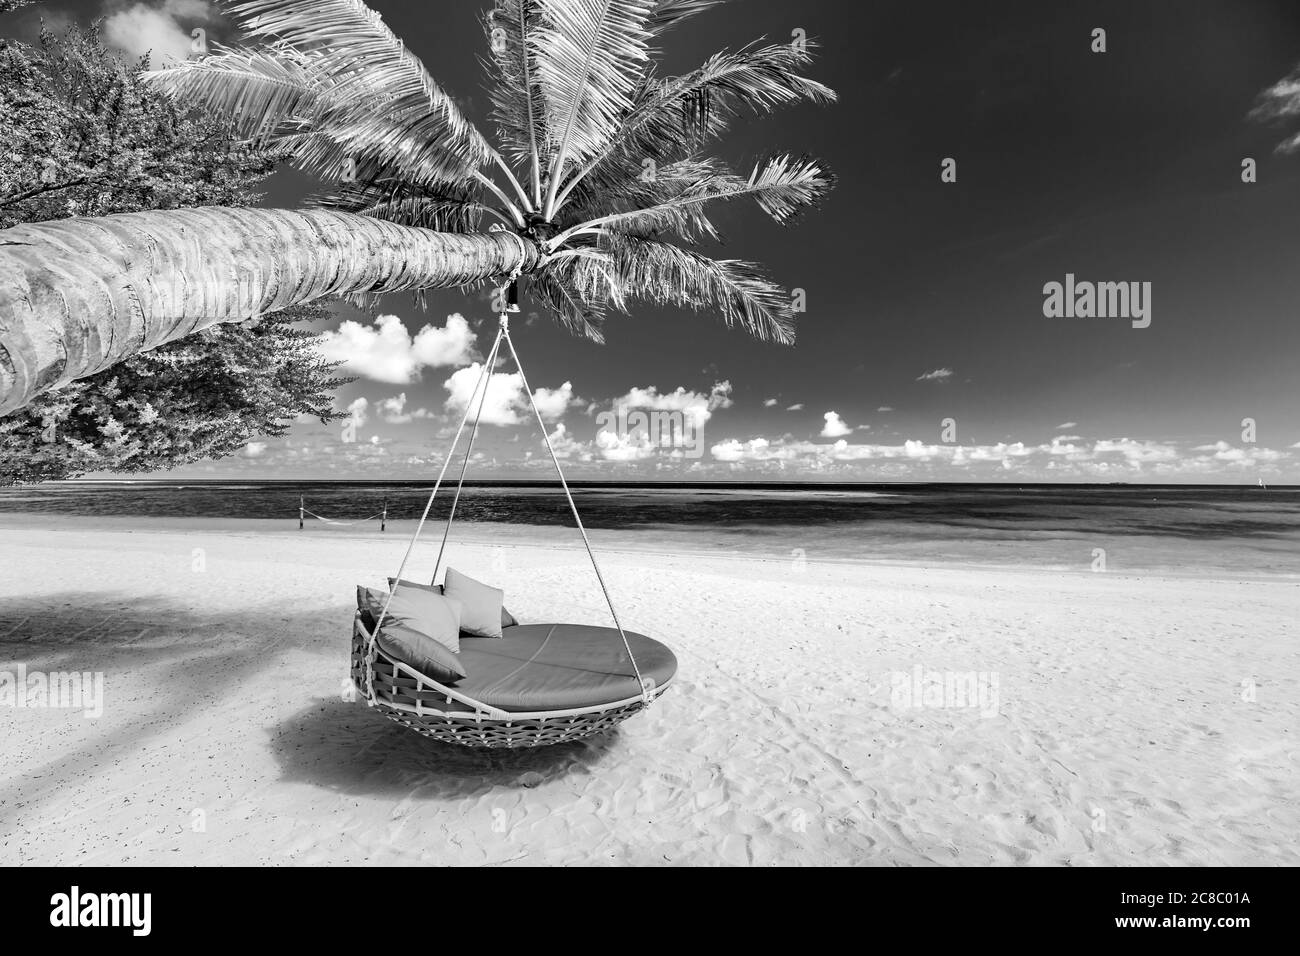 Plage tropicale monochrome comme paysage d'été avec balançoire de plage ou hamac et sable blanc calme mer bande noire de plage. Des vacances parfaites sur la plage Banque D'Images